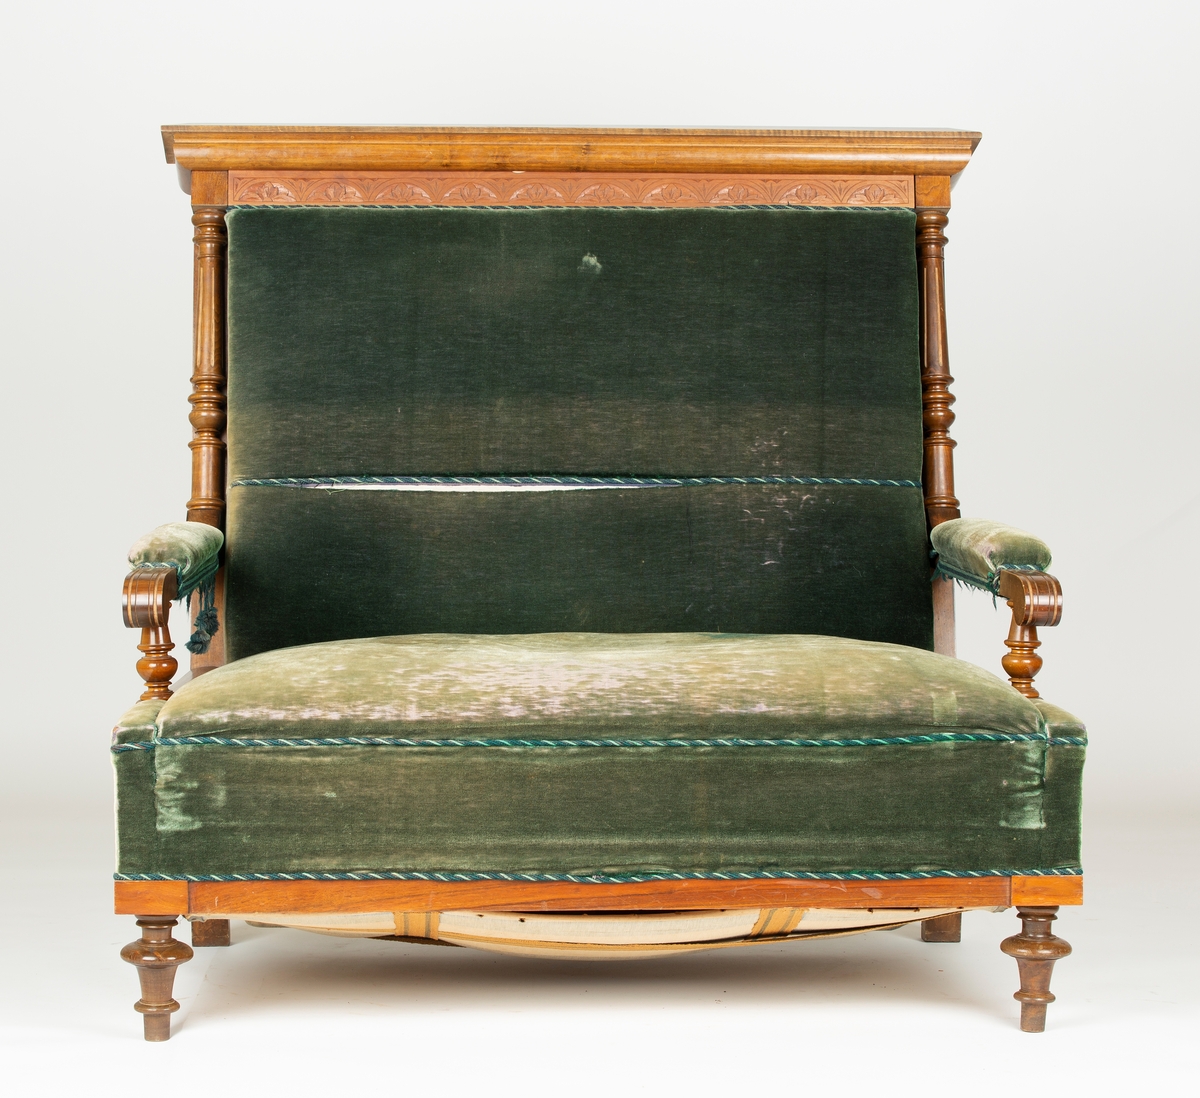 Sovasofa. Biedermeier salongmøblement i 8 deler; bord, sofa, 2 armstoler, 4 enkle stoler. Beiset eik, dreide ben, trukket med grønn plysj.